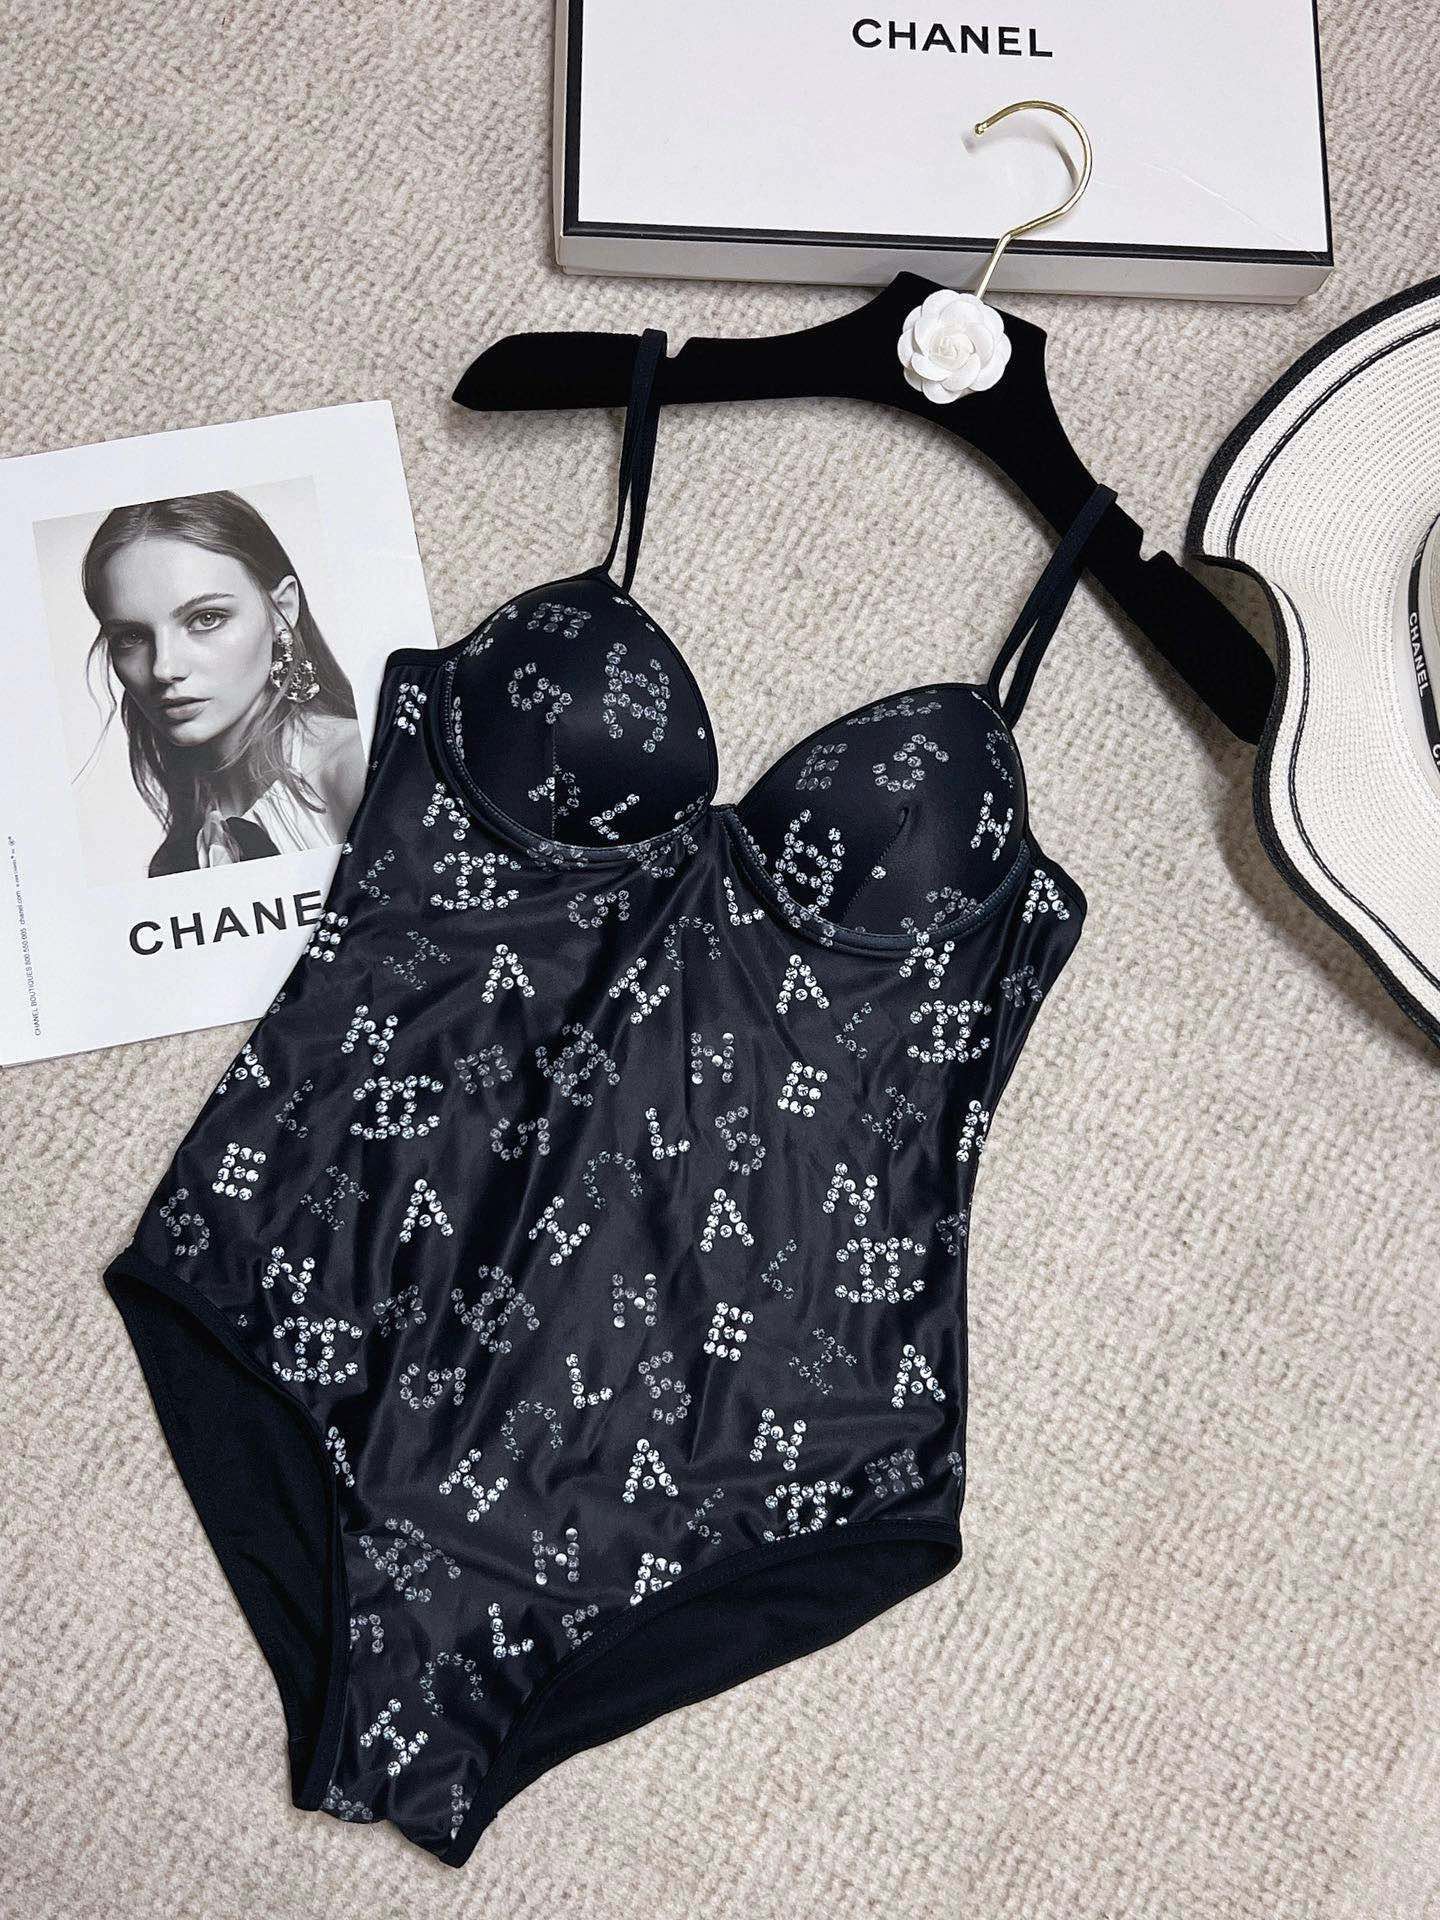 Chanel香奈儿新款连体泳衣适合多种场景的游泳衣️海边游泳池温泉水上乐园漂流都可以内搭也完全可以连体设